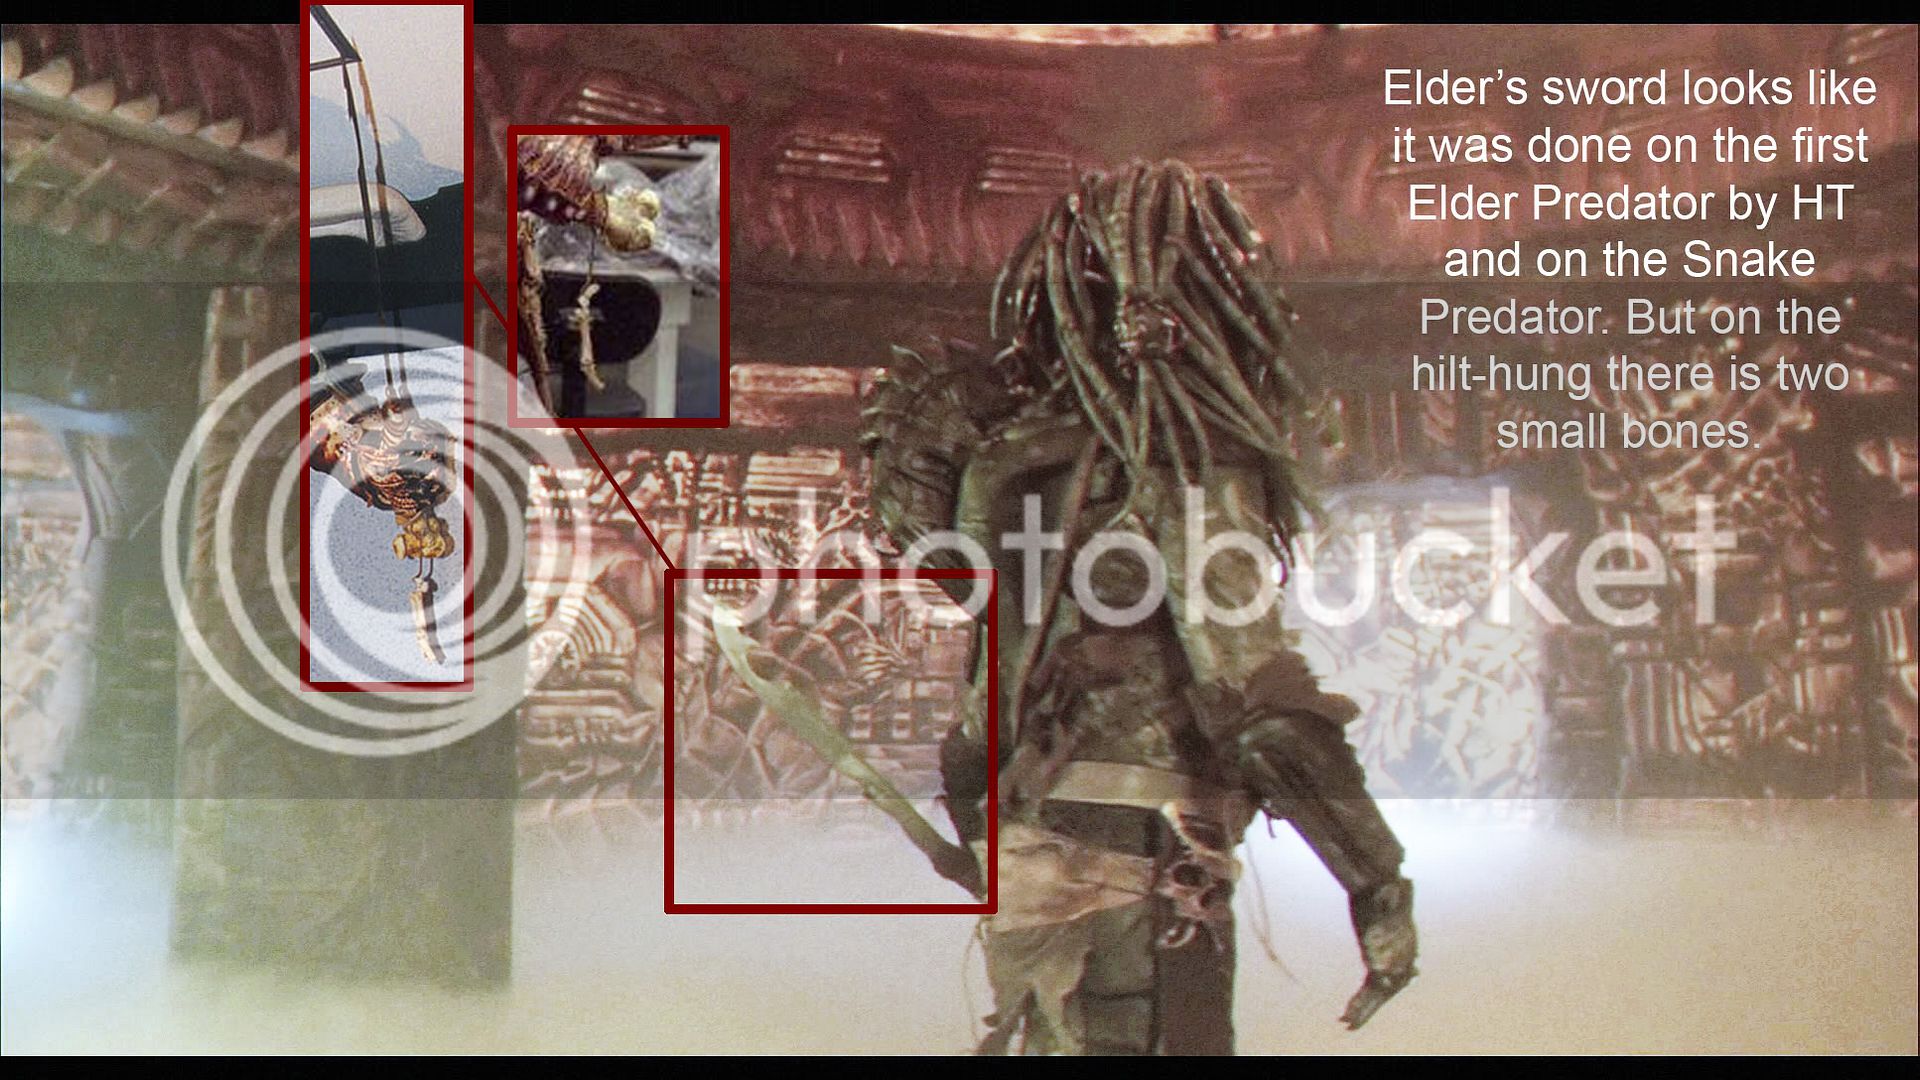 Elder_Predator_sword.jpg